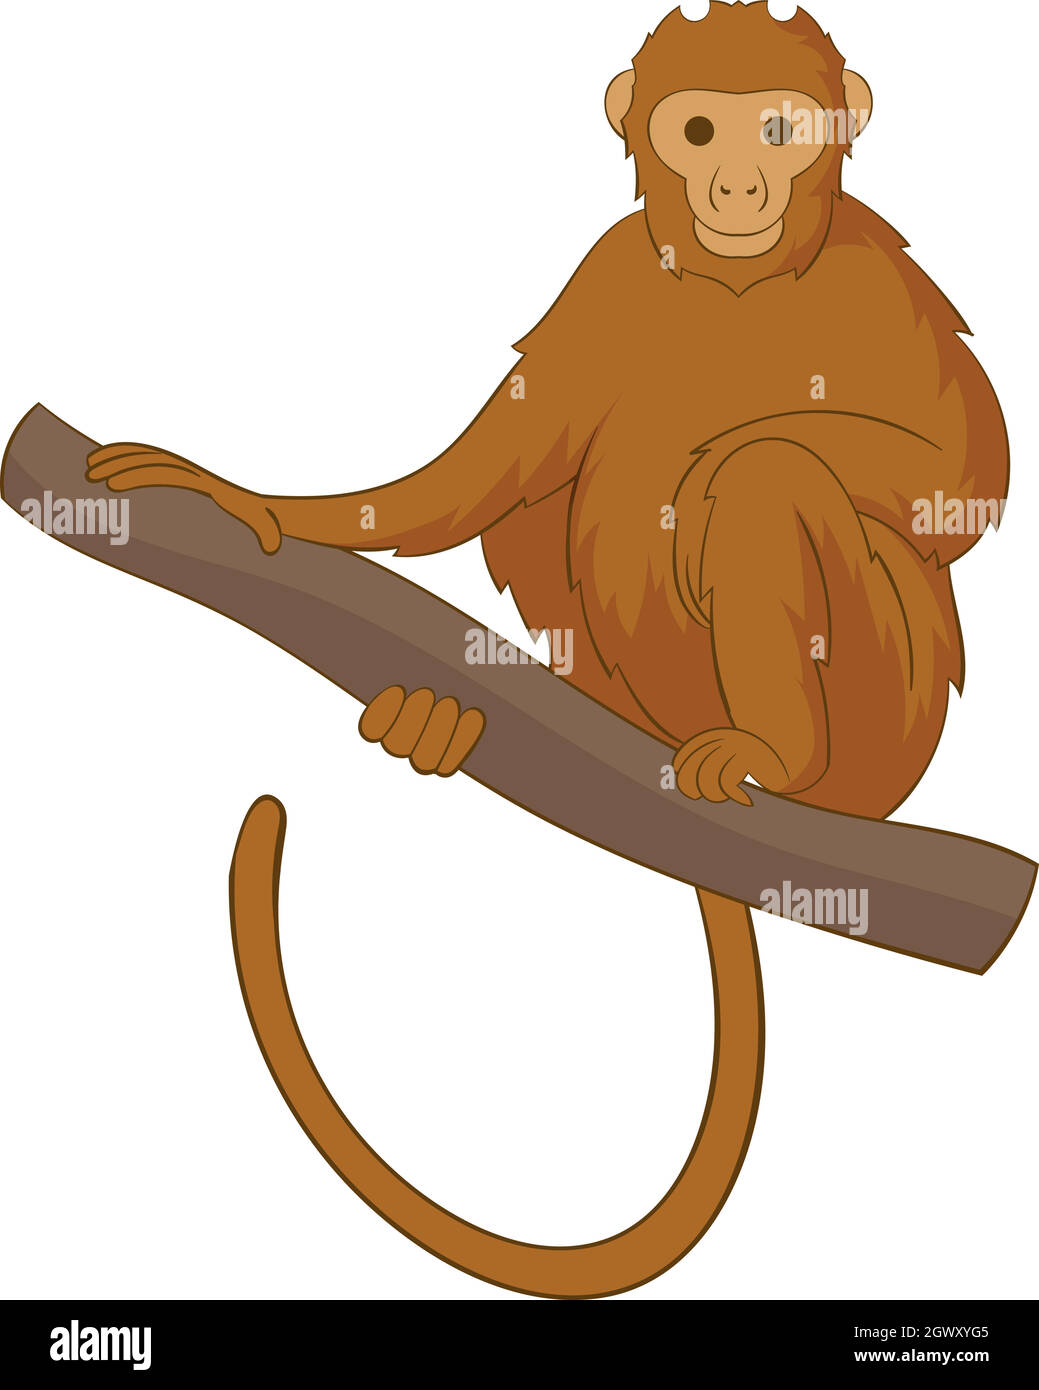 Monkey seduti su un simbolo di ramificazione, stile cartoon Illustrazione Vettoriale